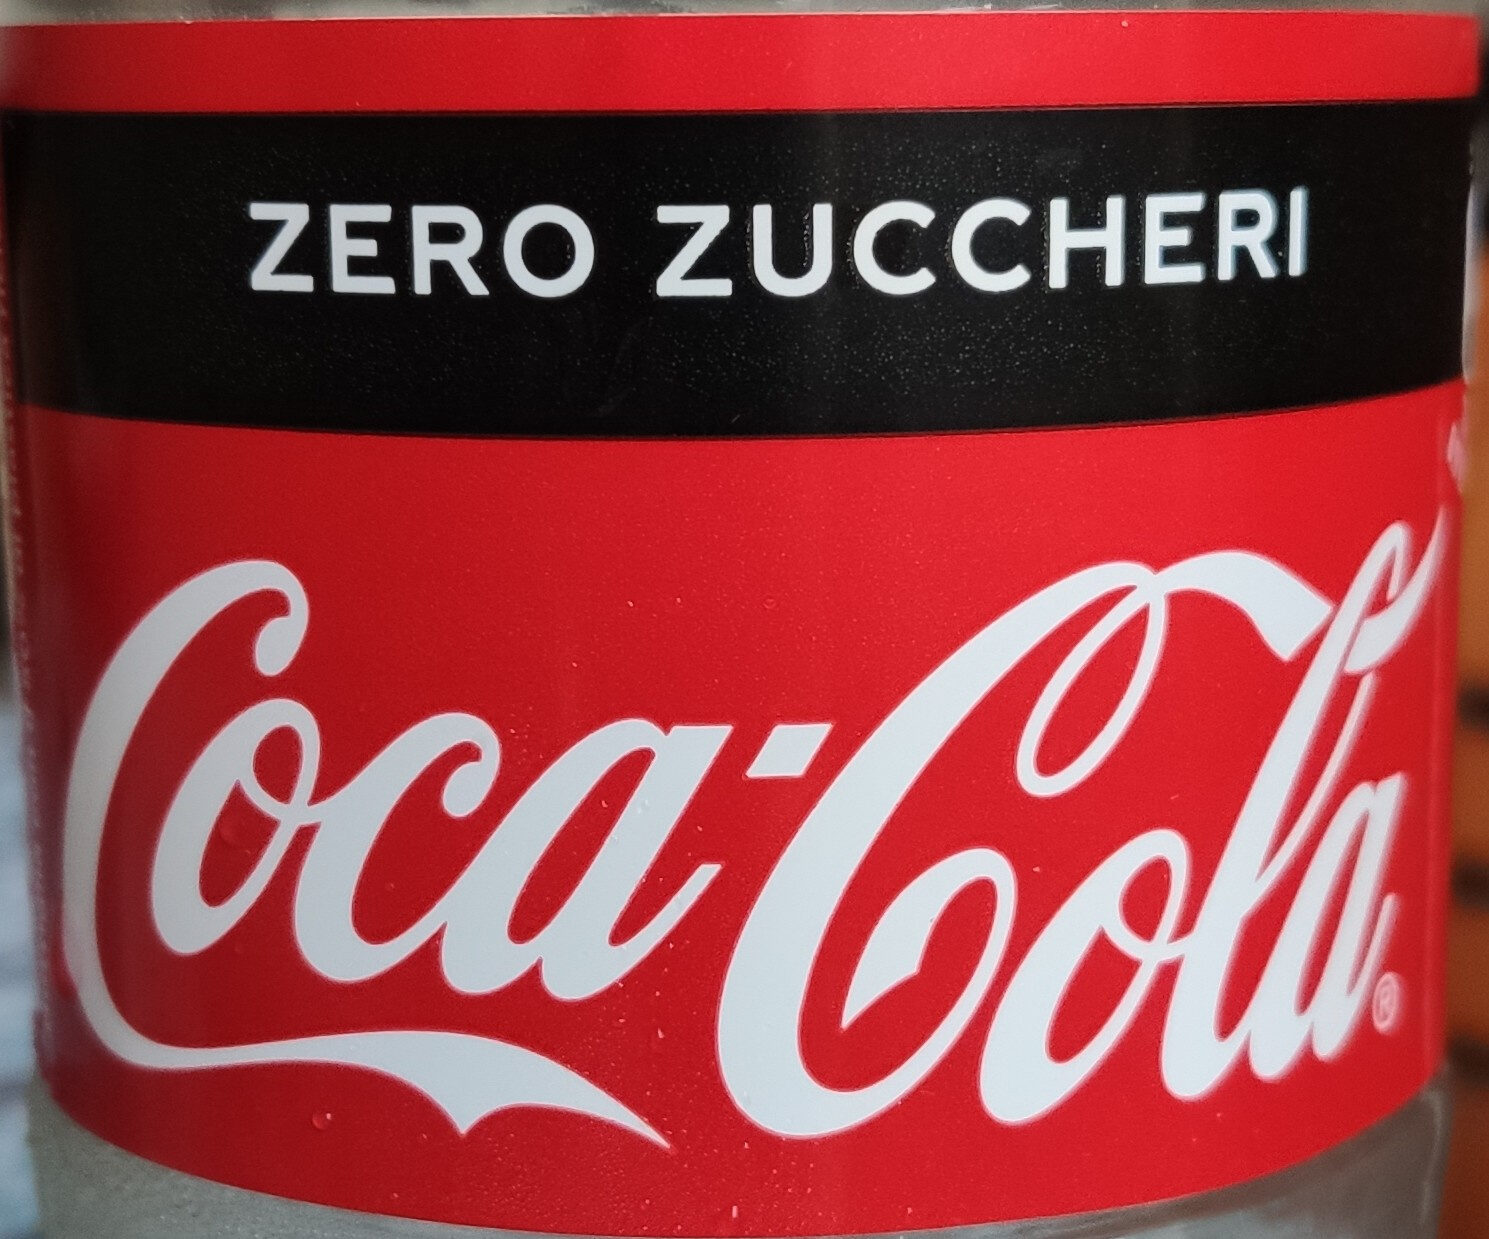 Coca cola zero - Product - it